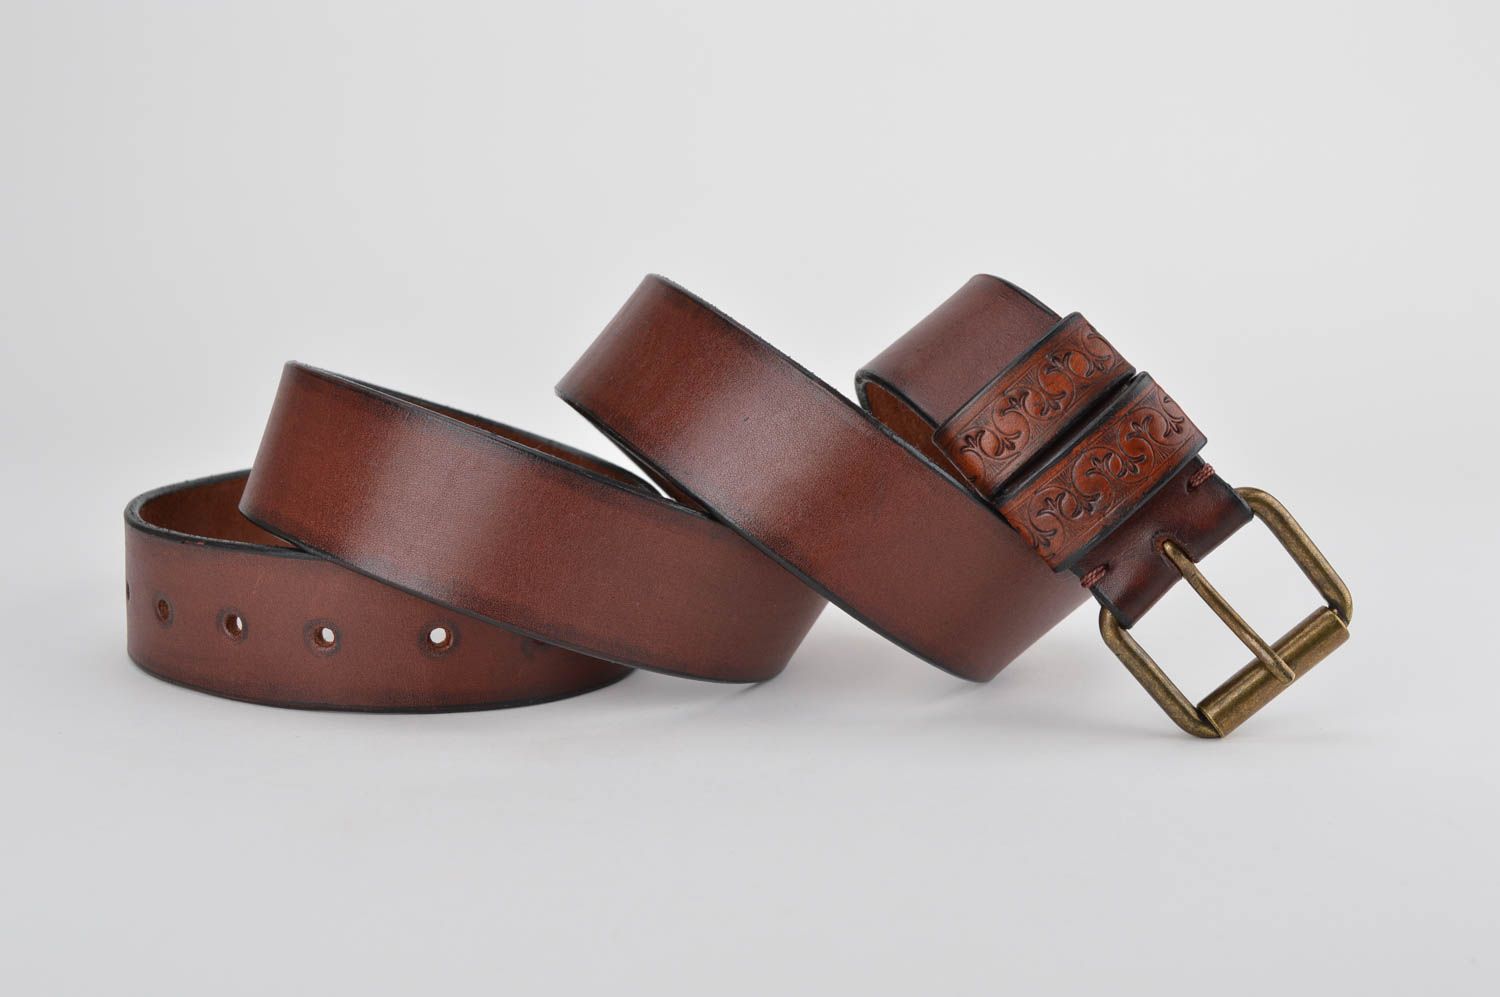 Beautiful handmade leather belt gentlemen only cool accessories for men 1370374523 - BUY ...